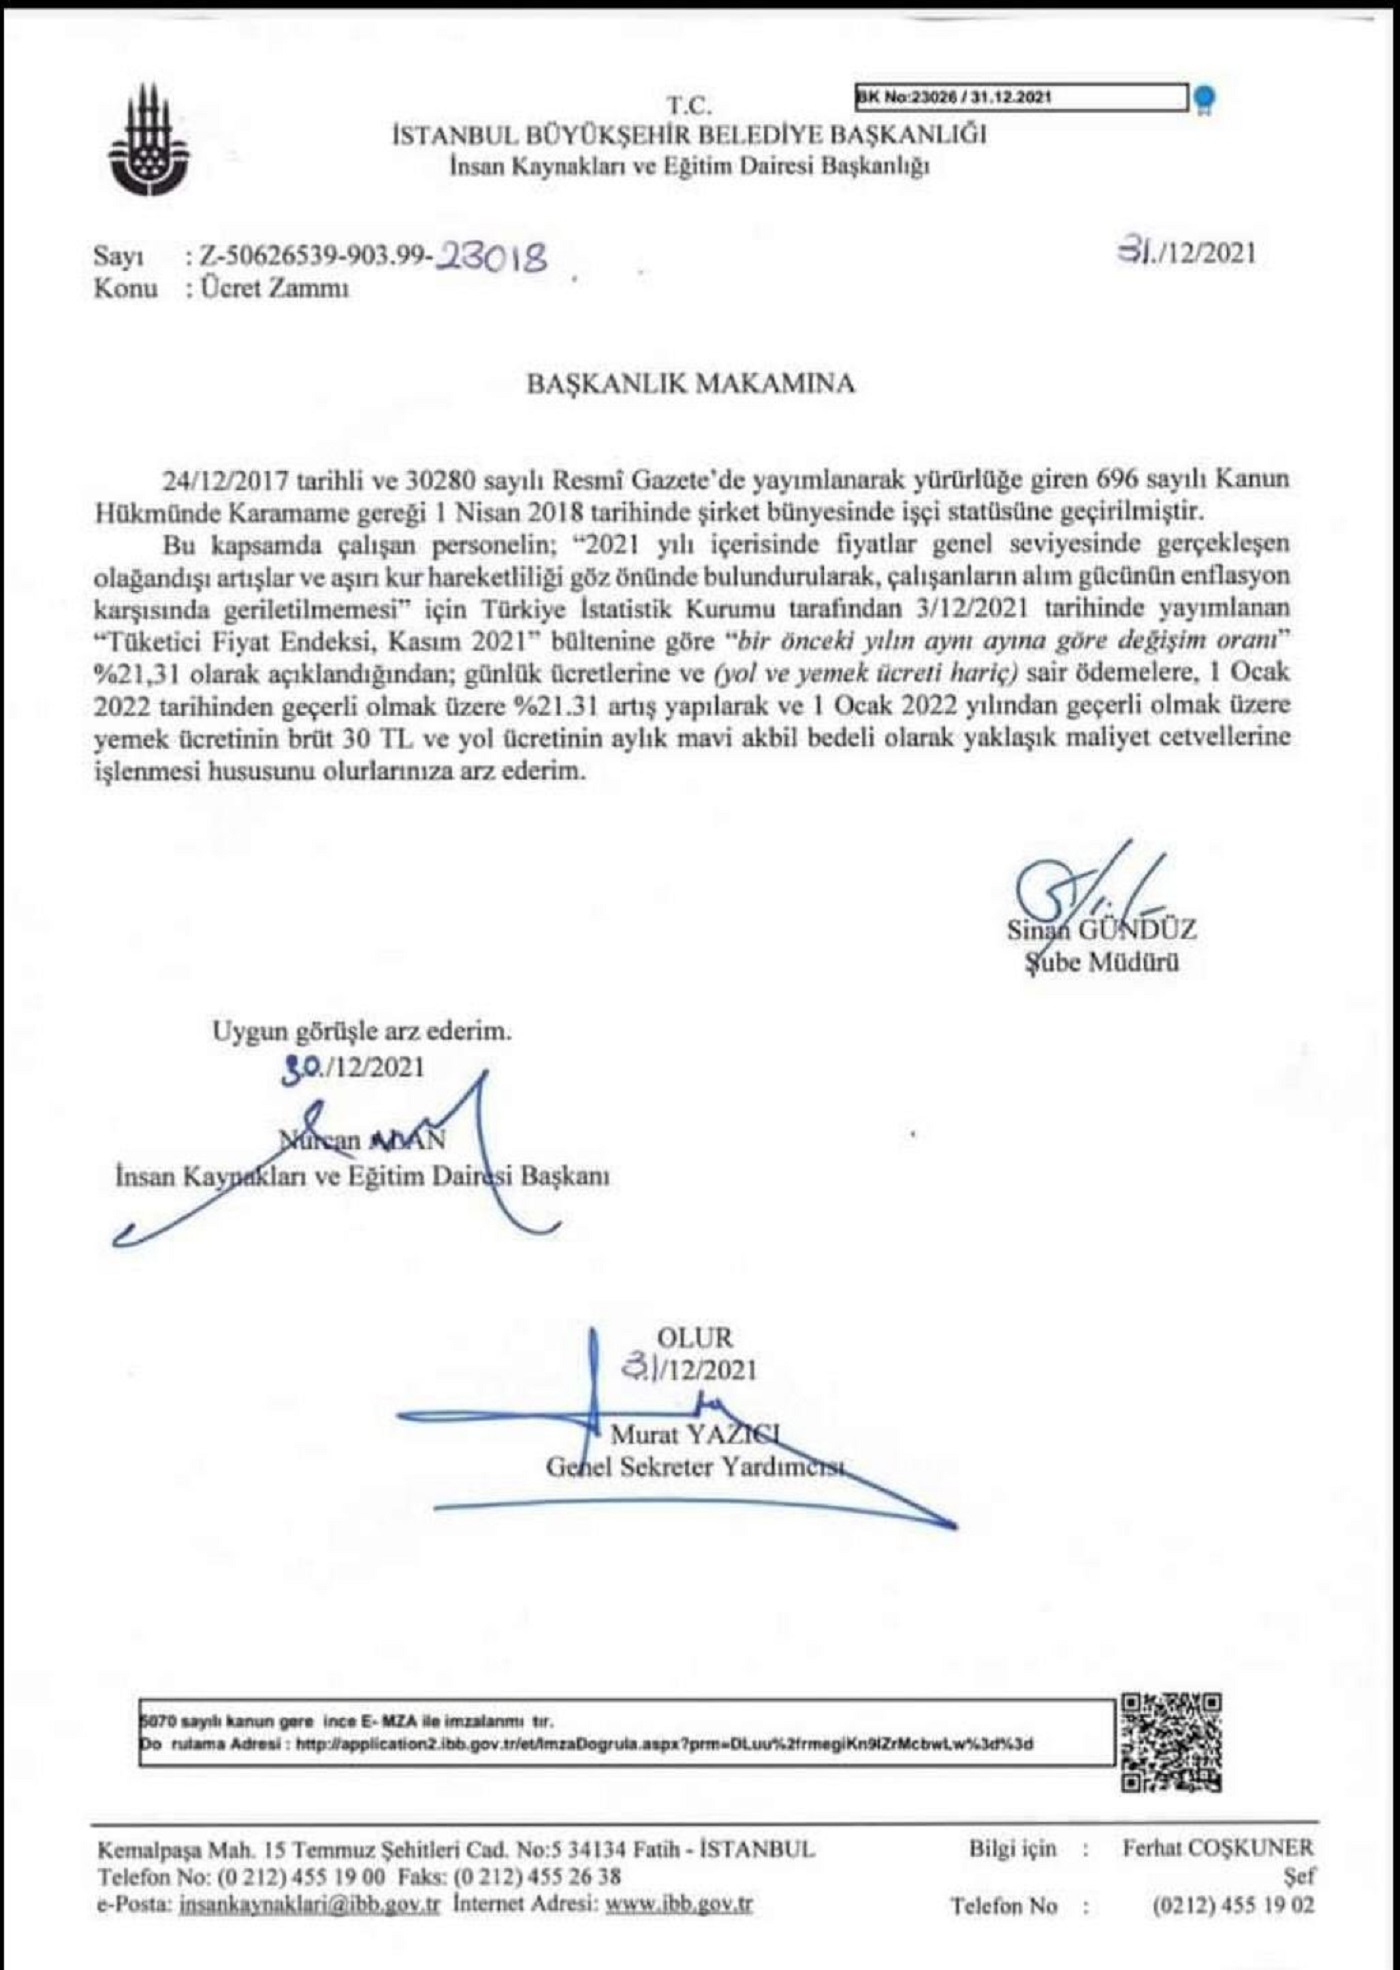 Tutarsızlıkta son nokta! CHP'li İBB, Kemal Kılıçdaroğlu'nun verilerine güvenmediği için bastığı TÜİK'e göre maaş zammı yaptı! 